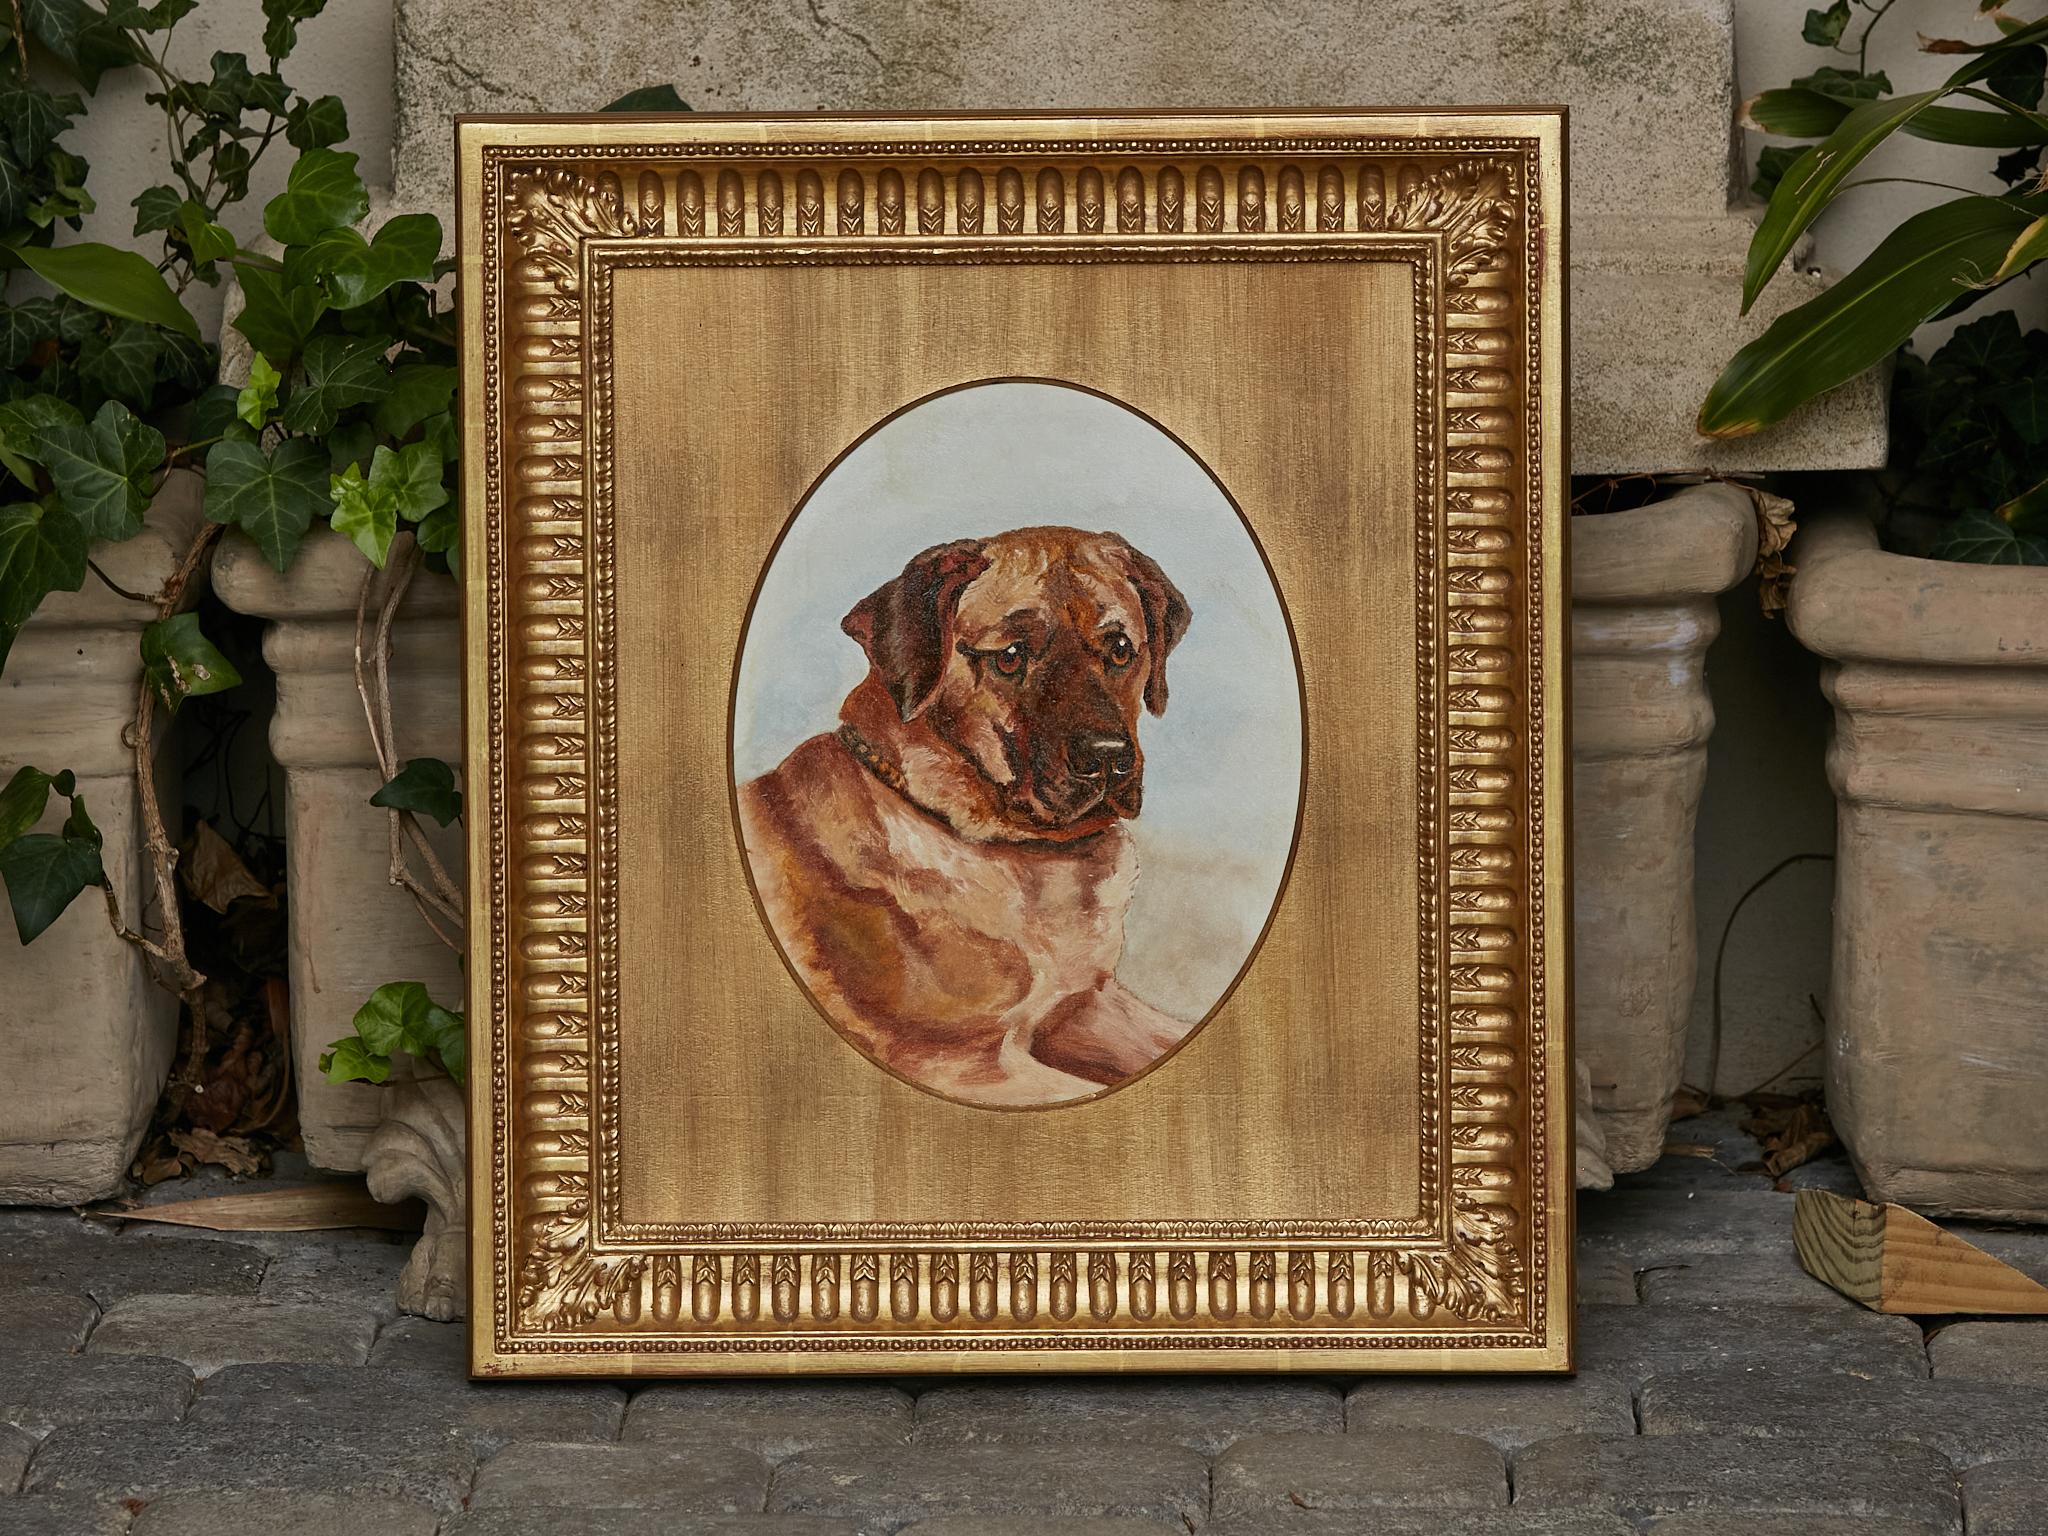 Peinture anglaise à l'huile sur panneau du XIXe siècle représentant le buste d'un chien mastiff, dans un cadre en bois doré. Plongez votre intérieur dans l'élégance intemporelle du portrait animalier avec cette captivante peinture anglaise à l'huile